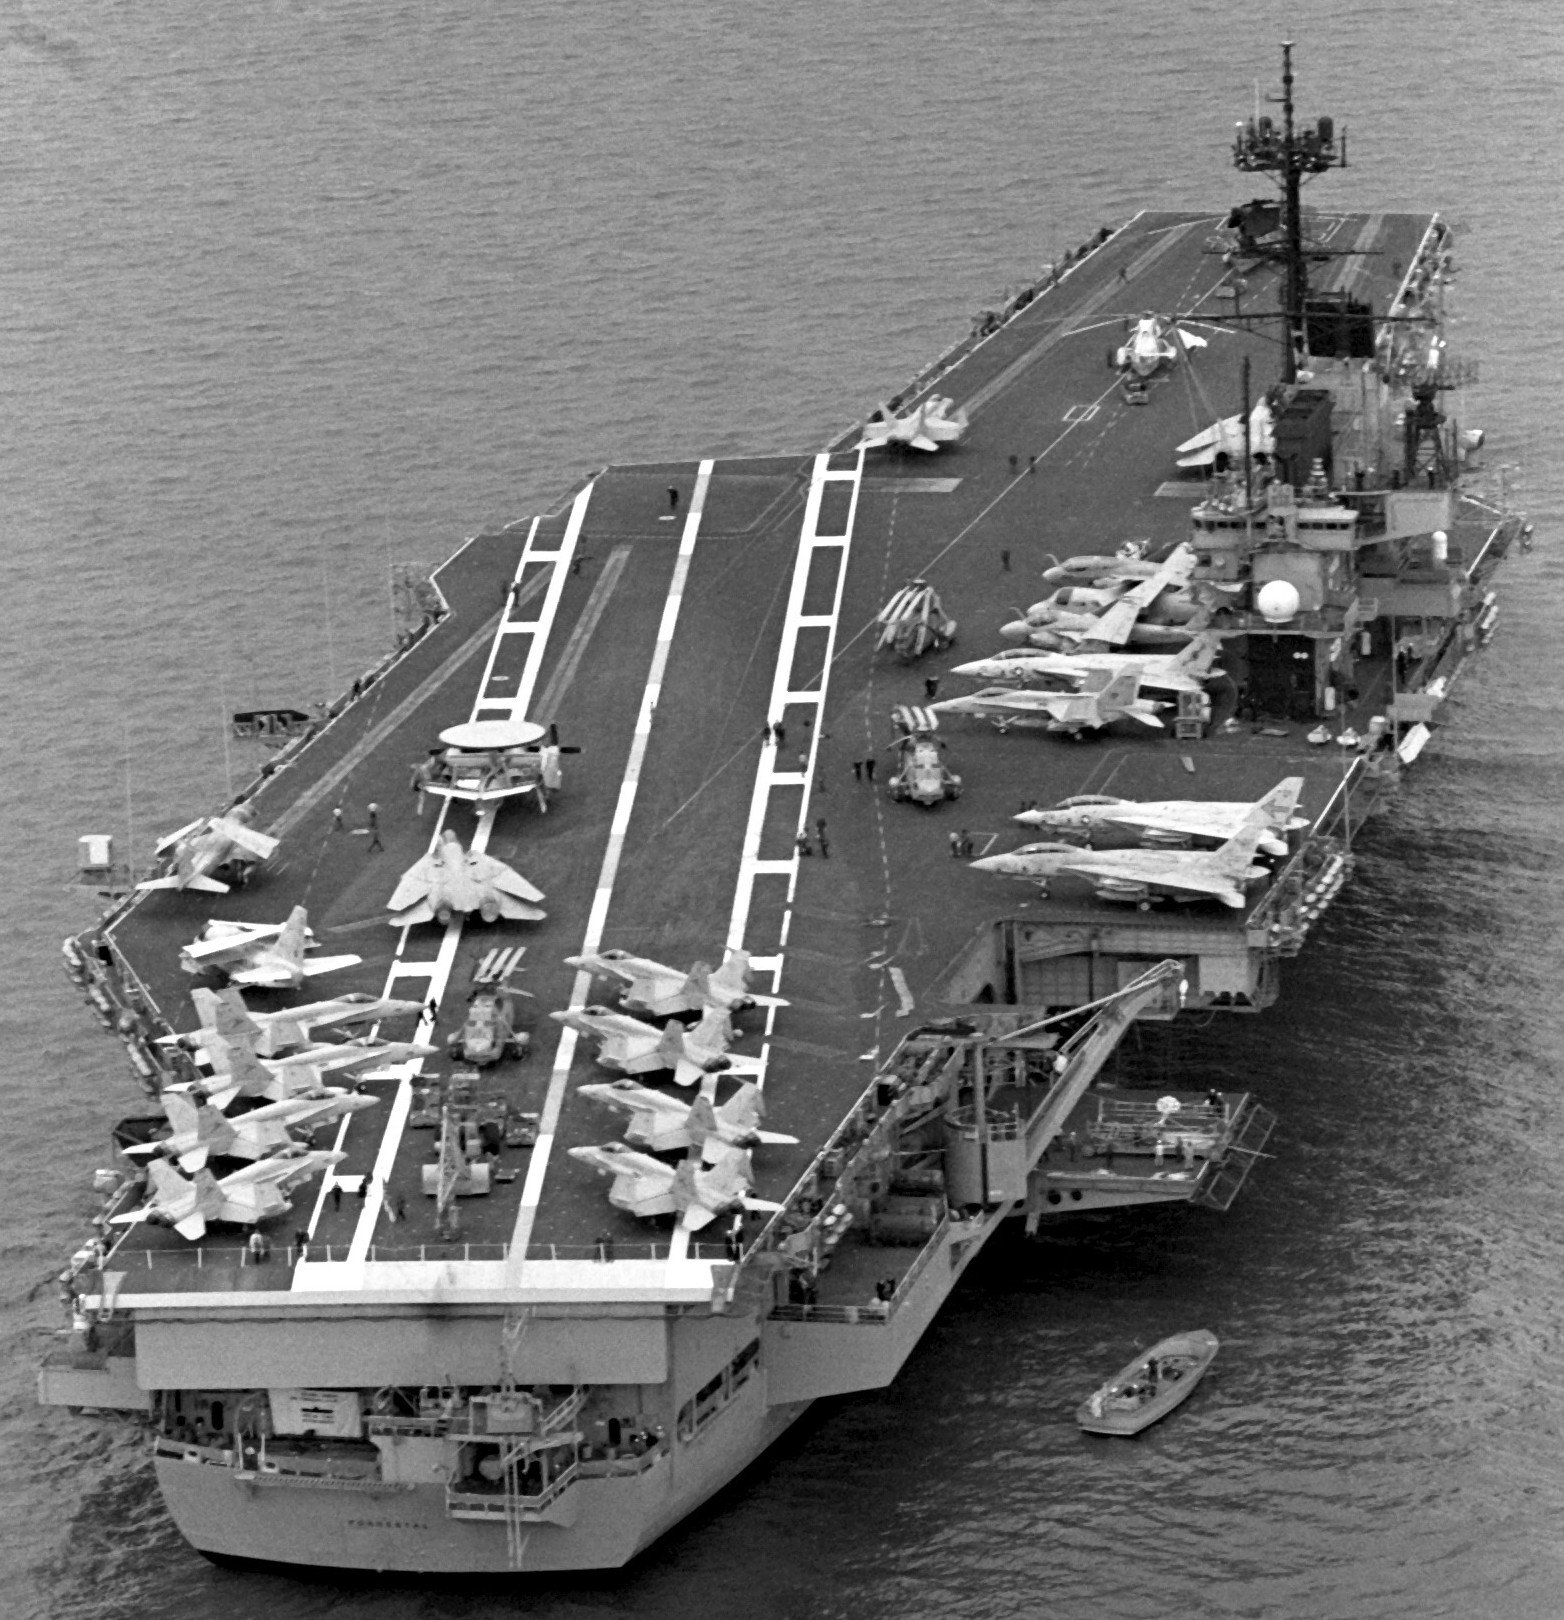 cv-59 uss forrestal aircraft carrier us navy fleet week new york 1989 100